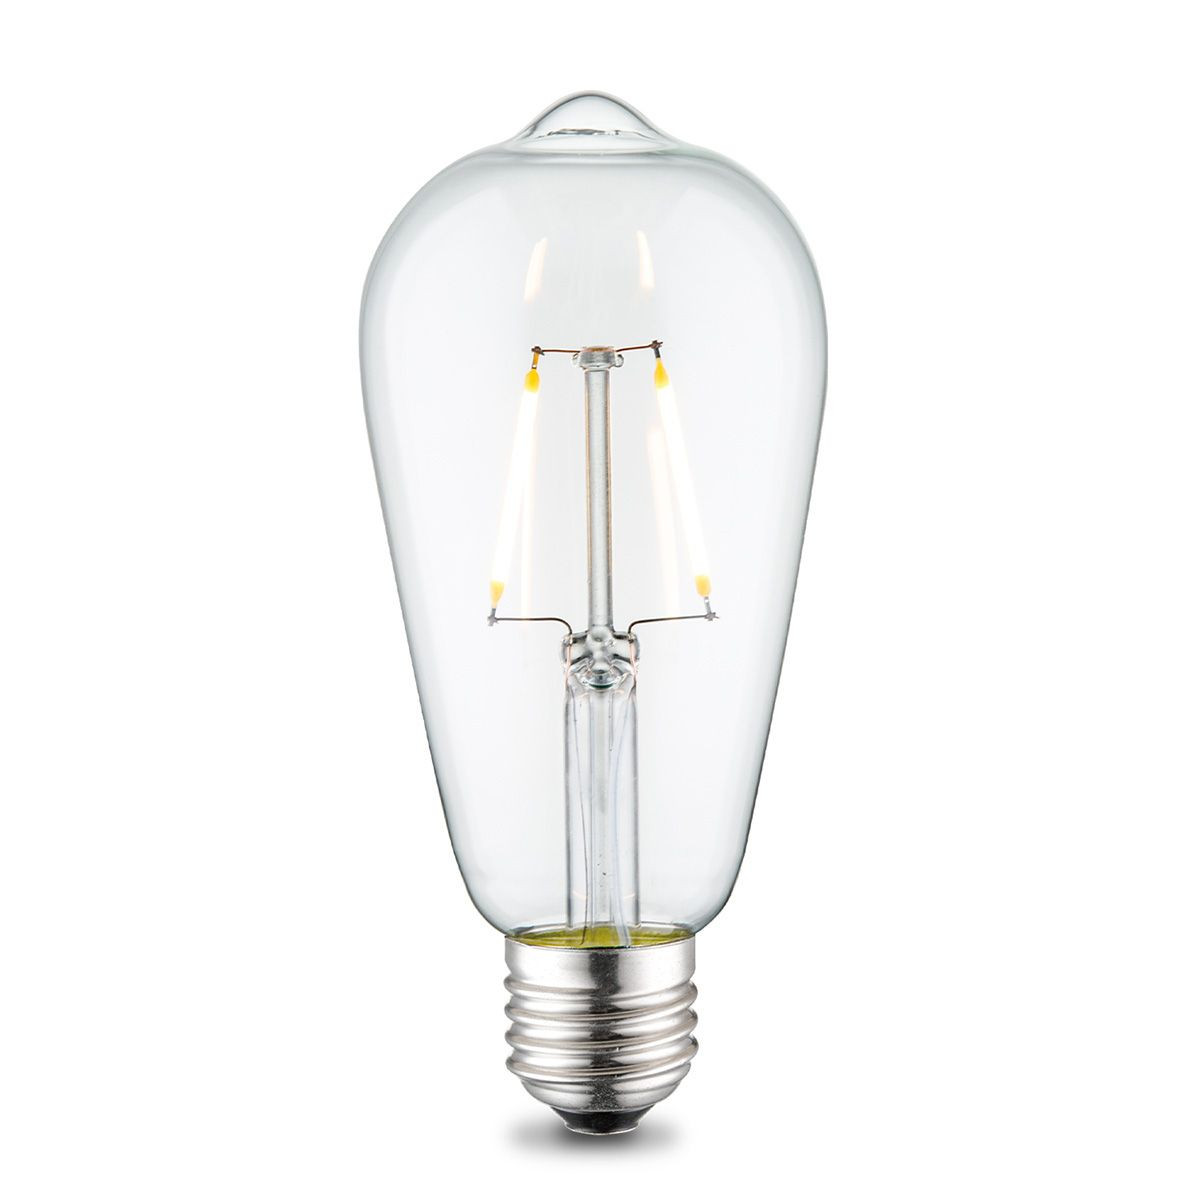 Edison Vintage LED lamp E27 LED filament lichtbron, Deco Drop ST64, 6.4/6.4/14cm, Helder, Retro LED lamp 2W 160lm 3000K, warm wit licht, geschikt voor E27 fitting